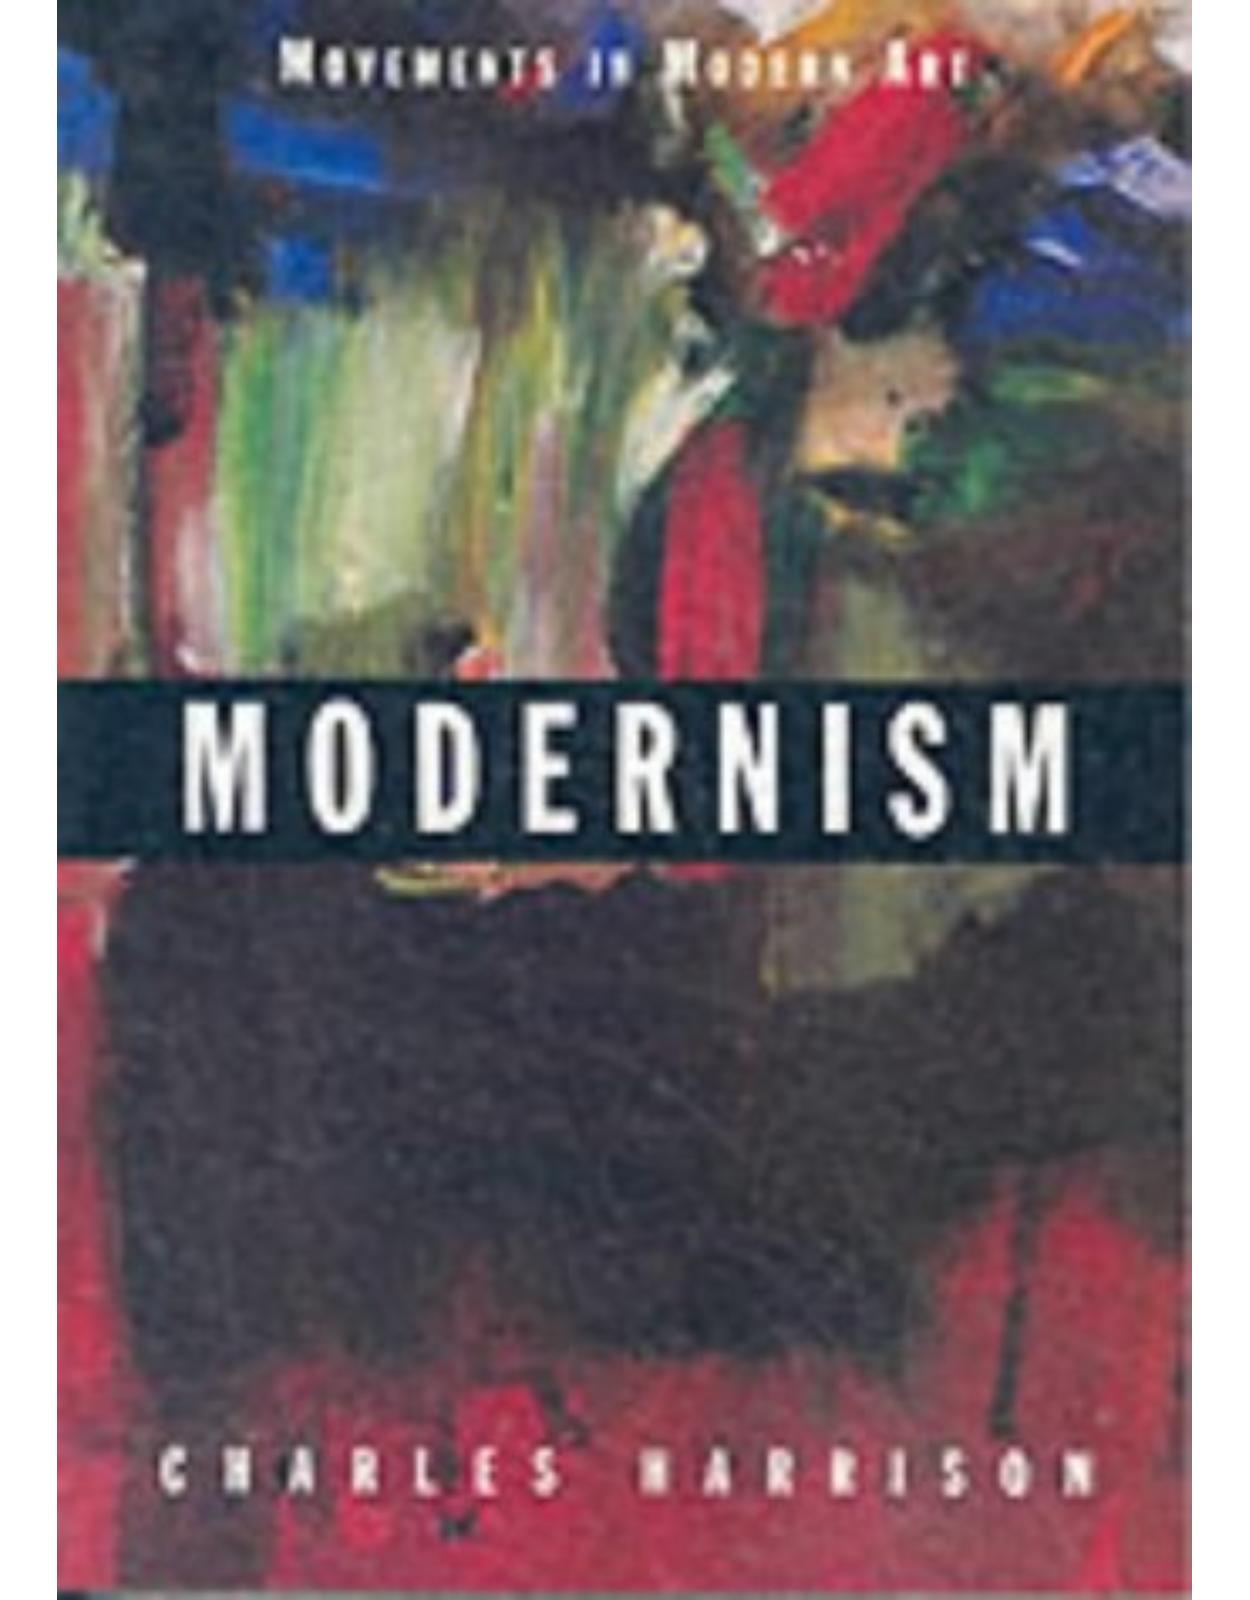 Modernism (Movements in Modern Art)